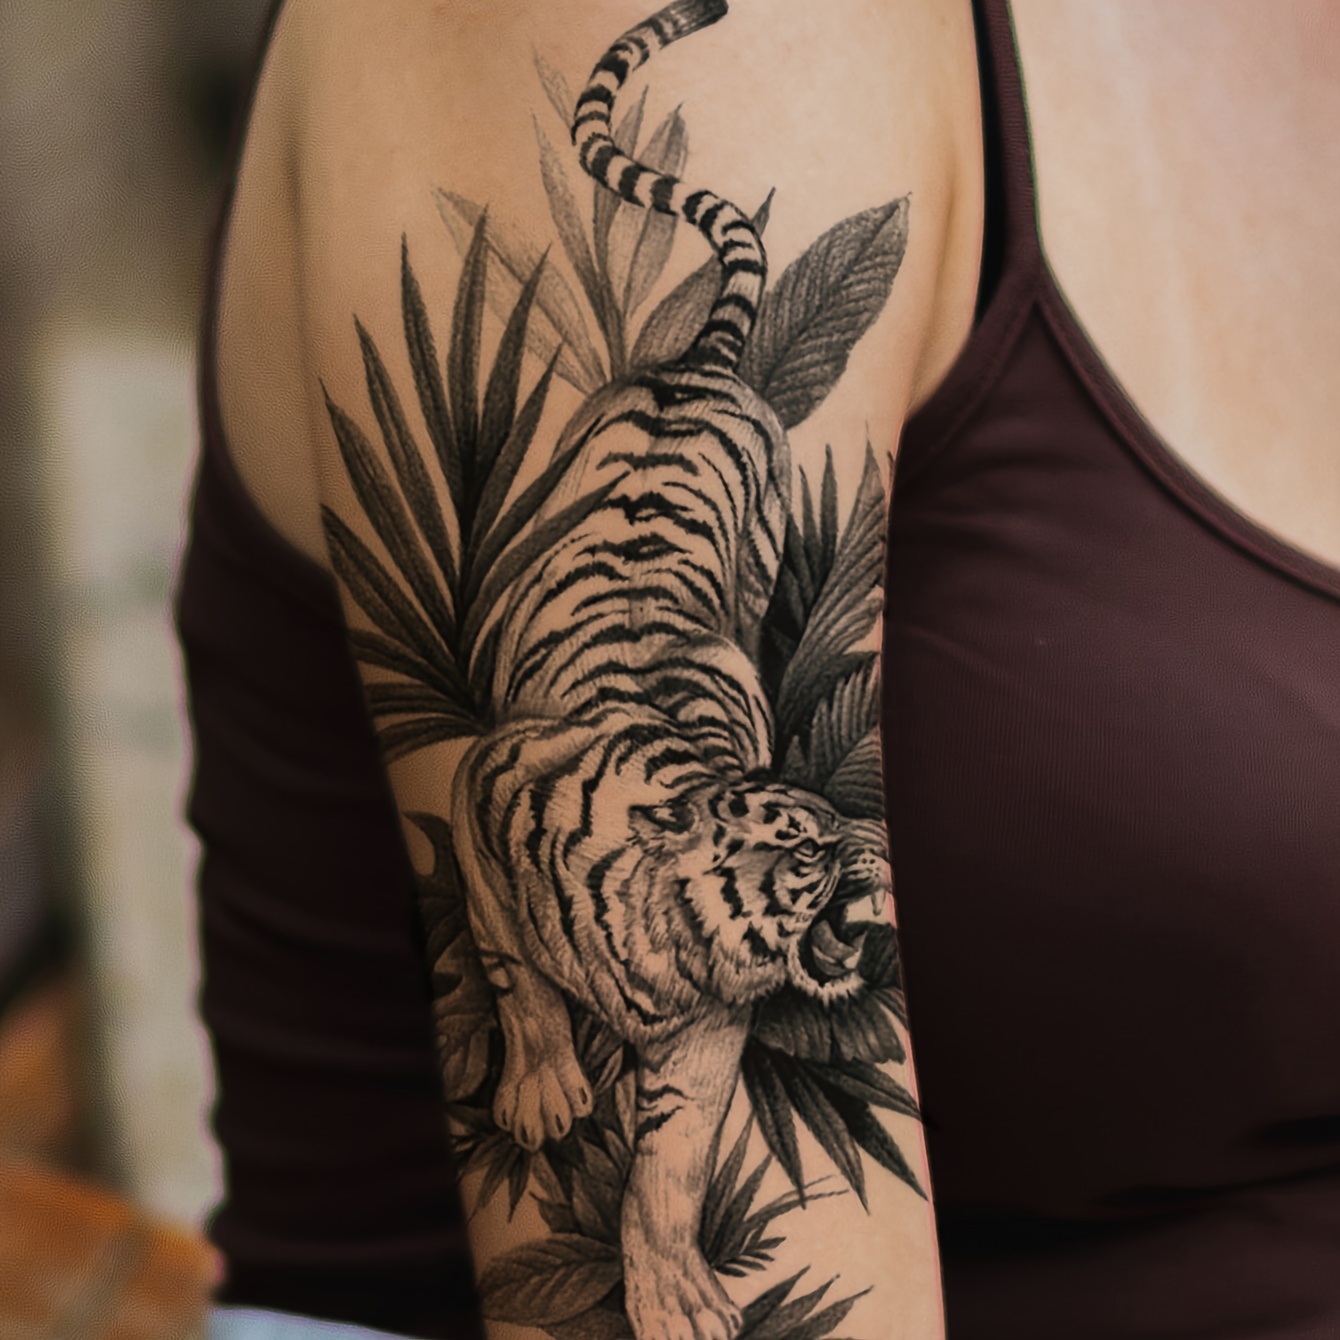 Leaf tattoo on the left inner arm